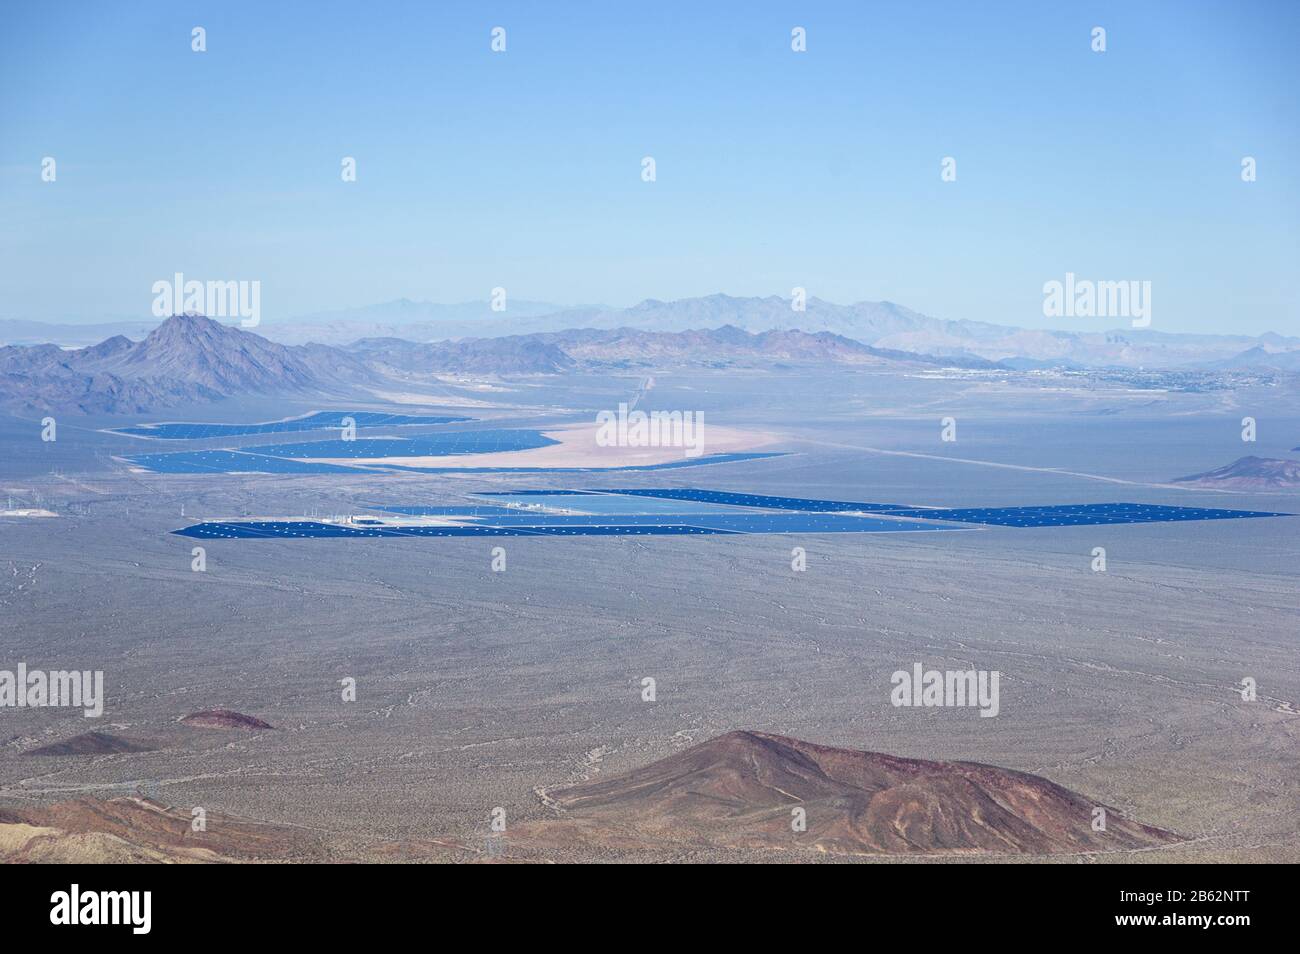 Vue à distance des centrales électriques solaires en fonctionnement et en construction dans le désert de mojave au sud de Las Vegas, y compris Nevada Solar One et Banque D'Images